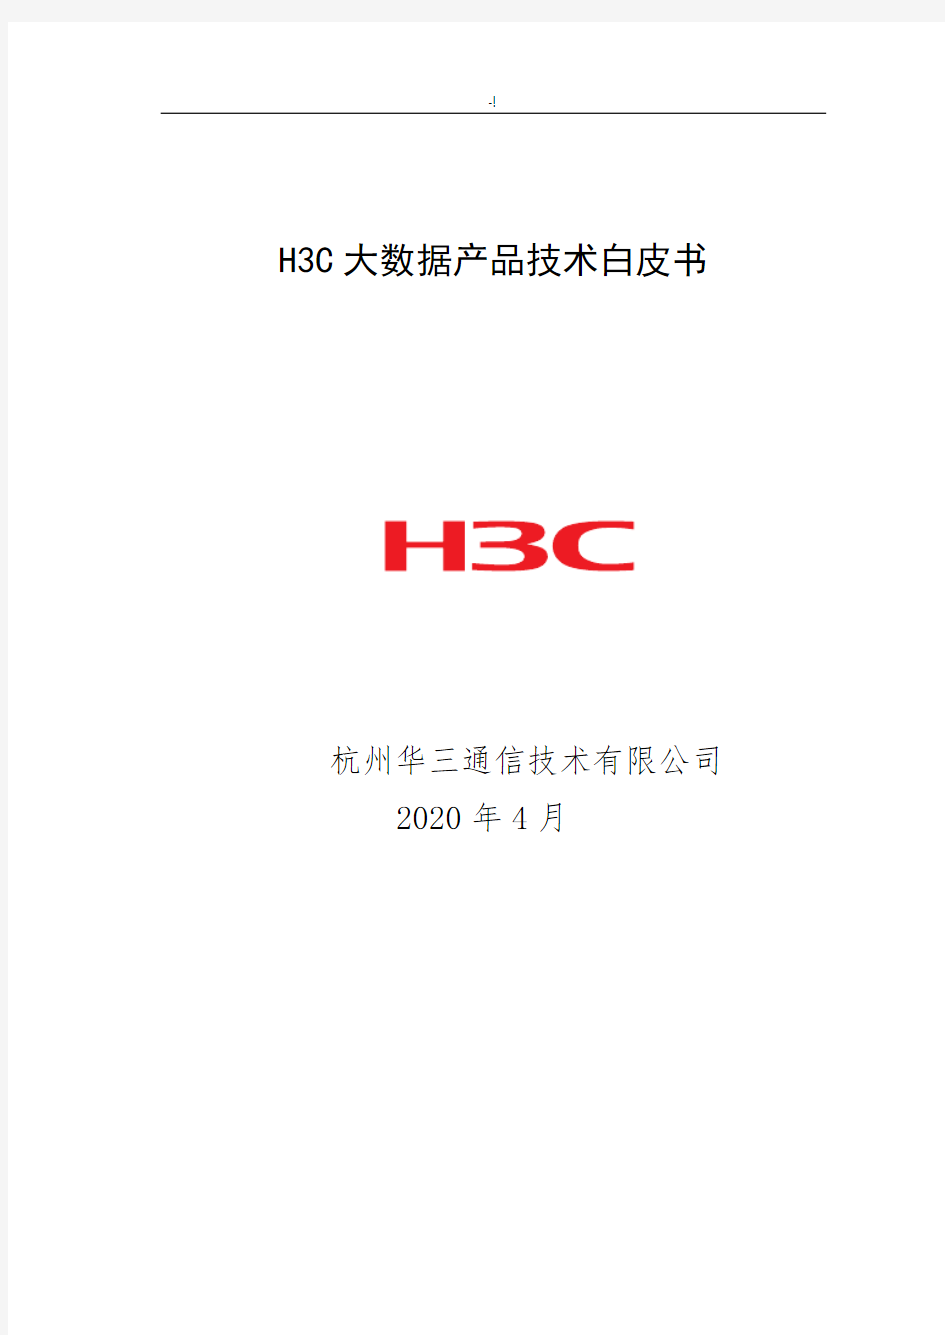 H3C大数据设备产品技术白皮书